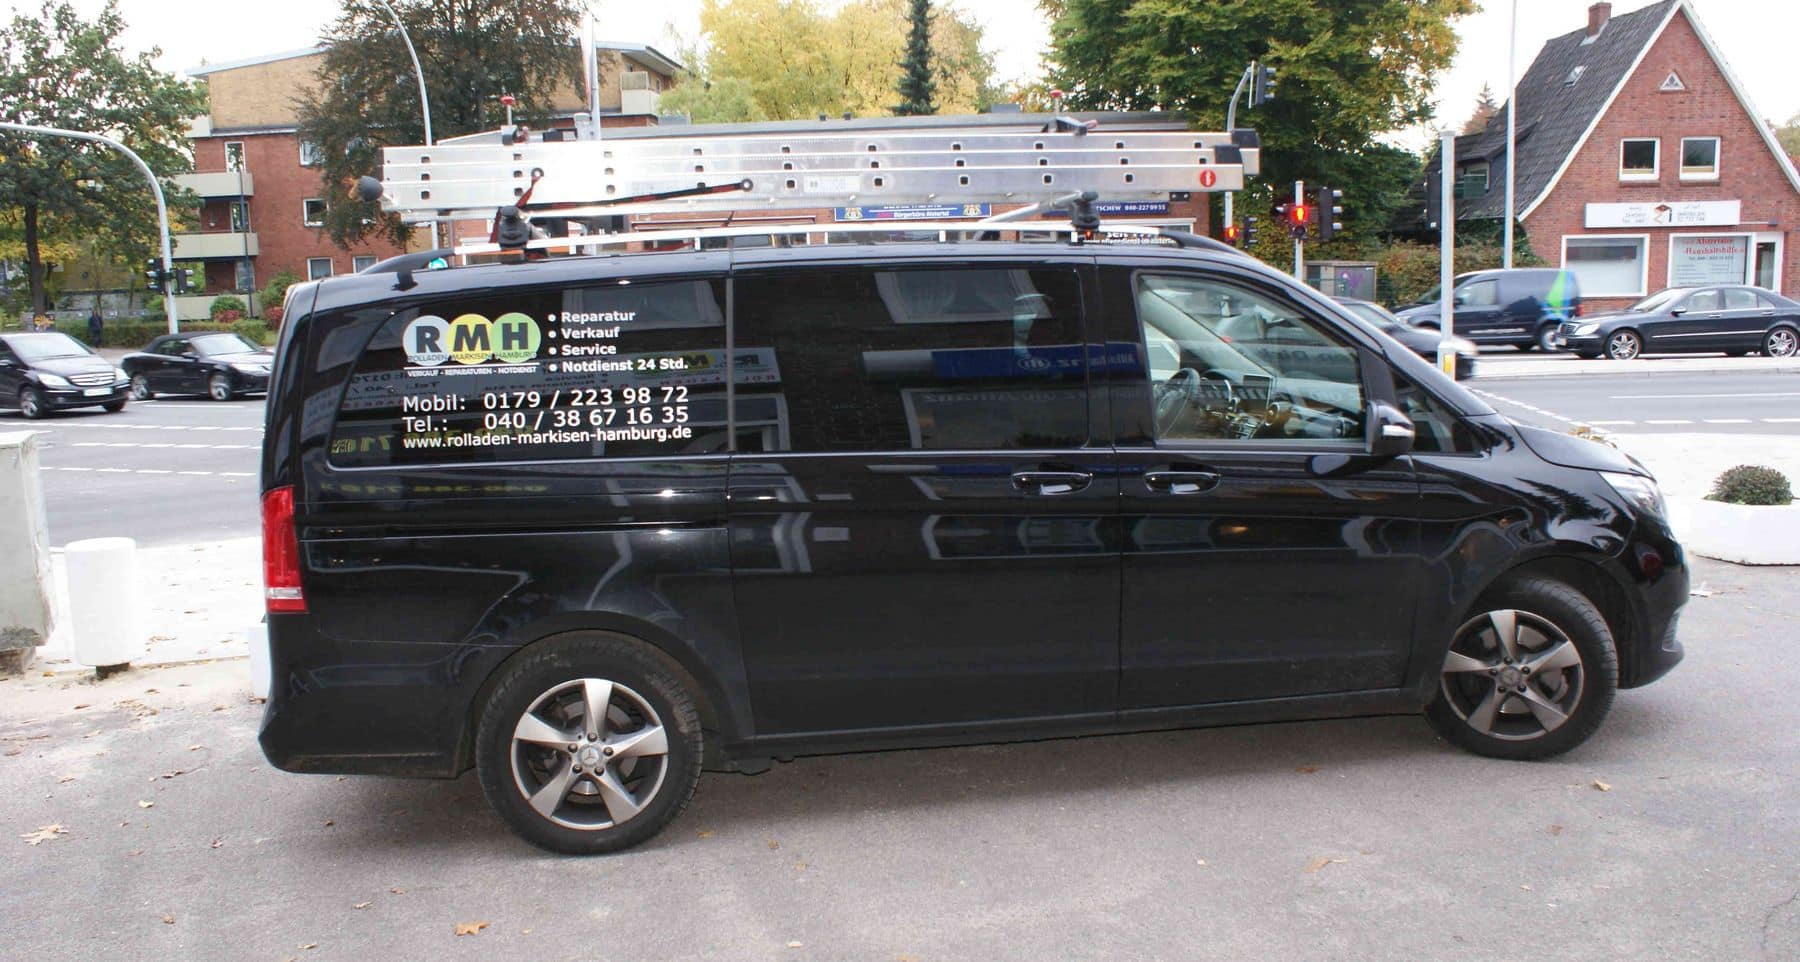 Ein am Straßenrand geparkter schwarzer Lieferwagen mit Leitern oben und Kontaktdaten des Unternehmens an der Seite.